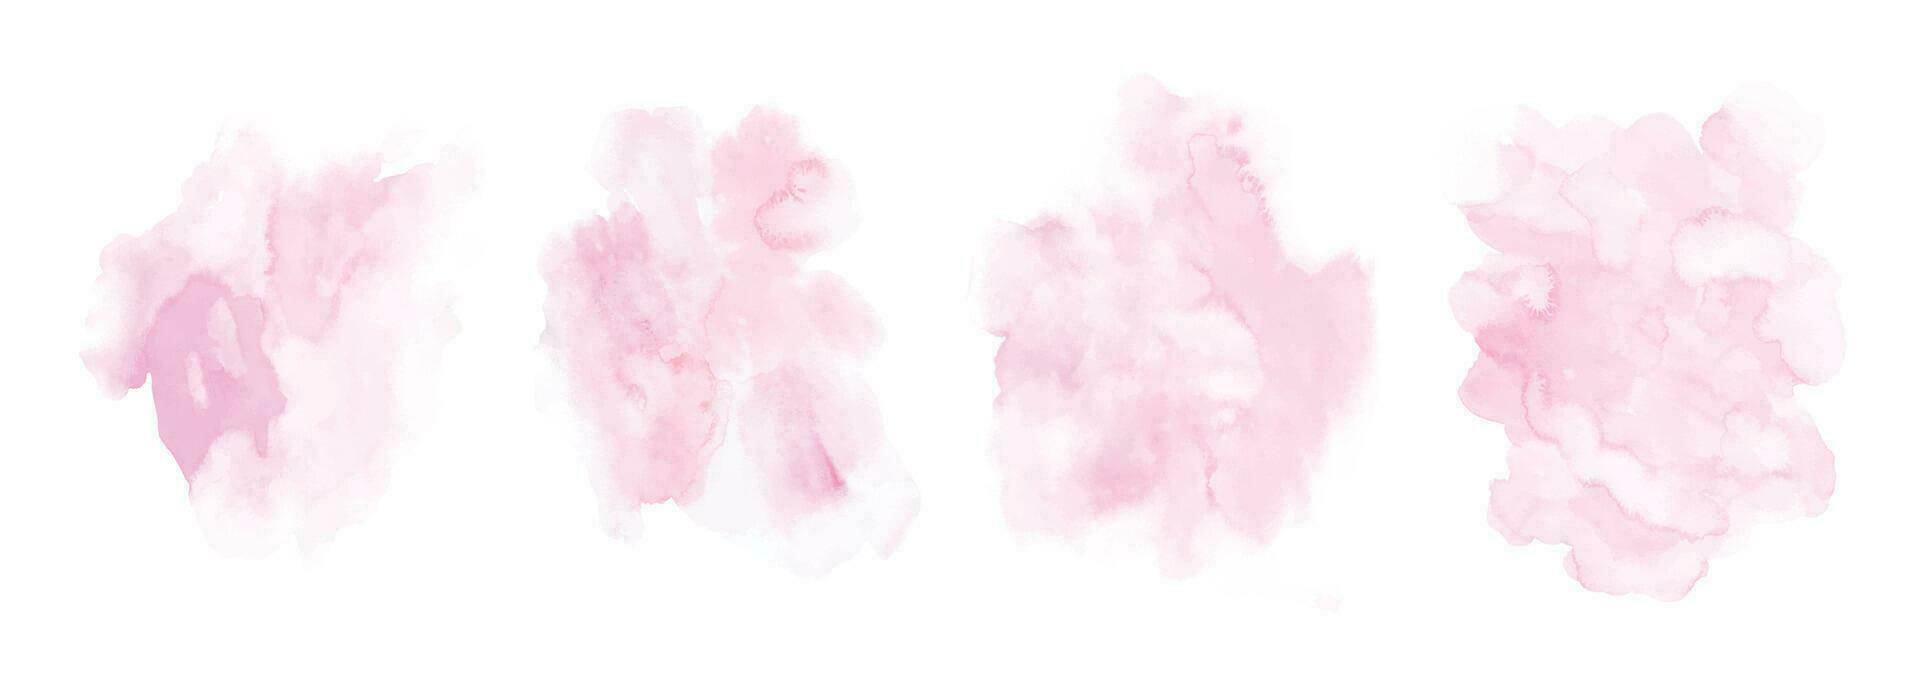 uppsättning av rosa vattenfärg textur handmålad vektor